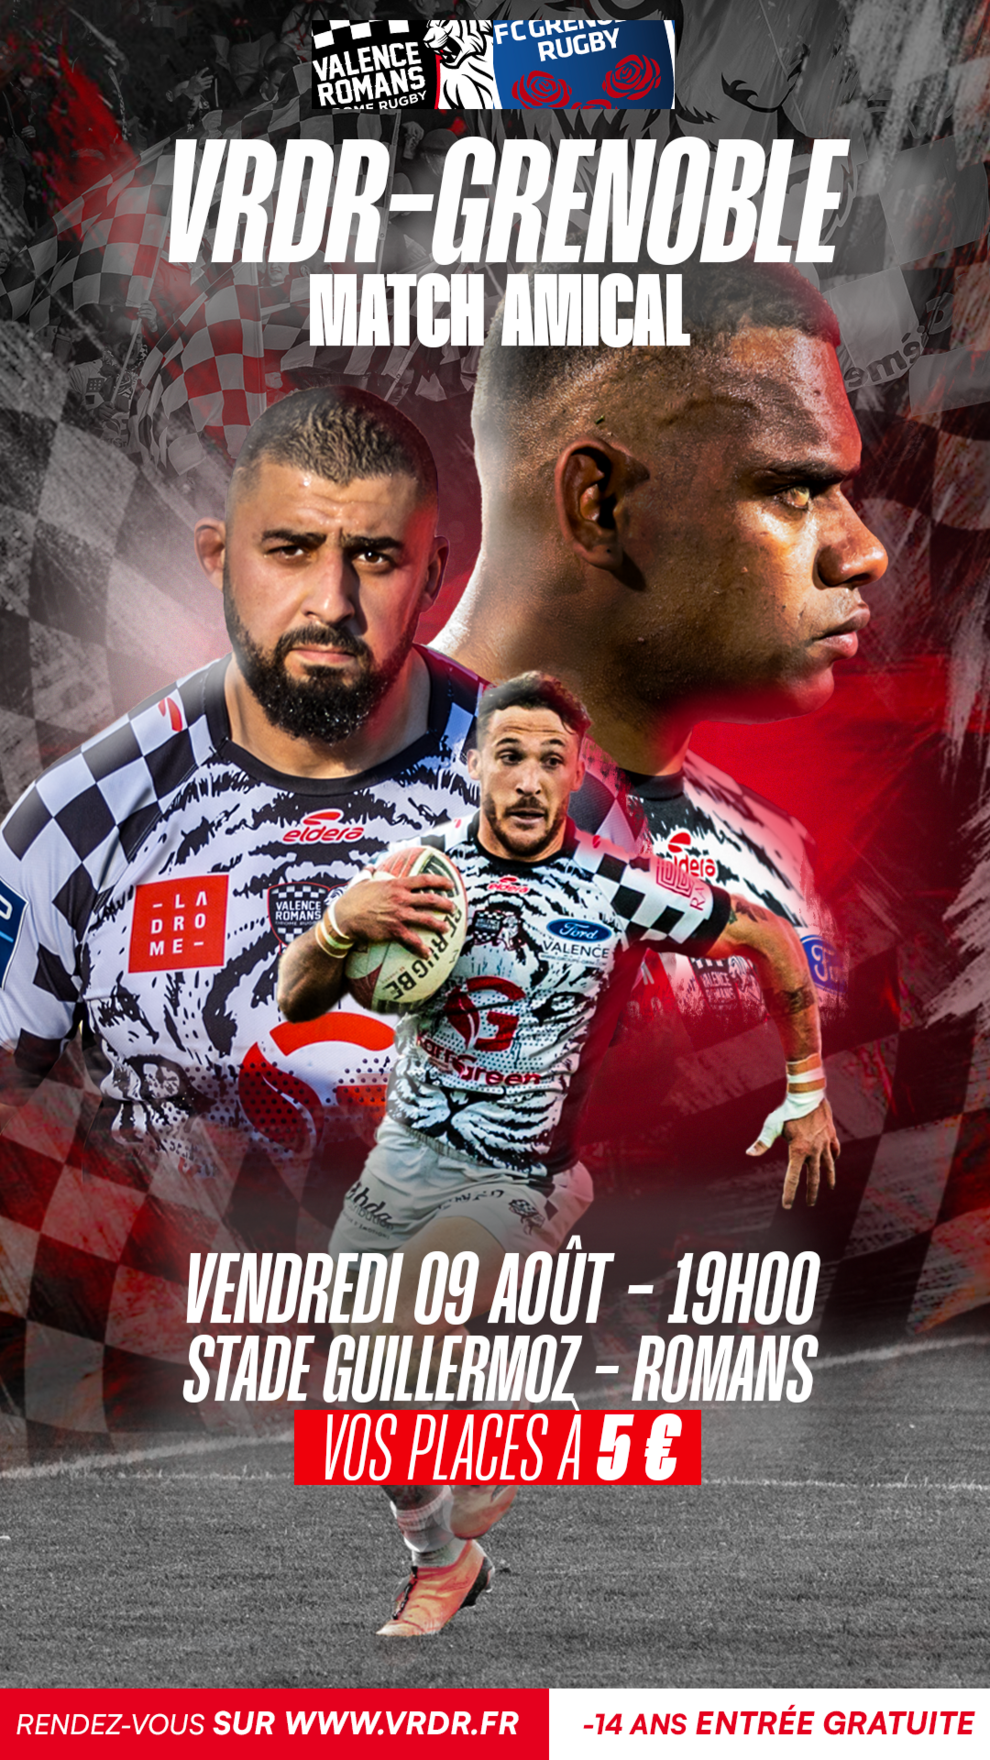 Match Amical de rugby : VRDR vs Grenoble à Romans